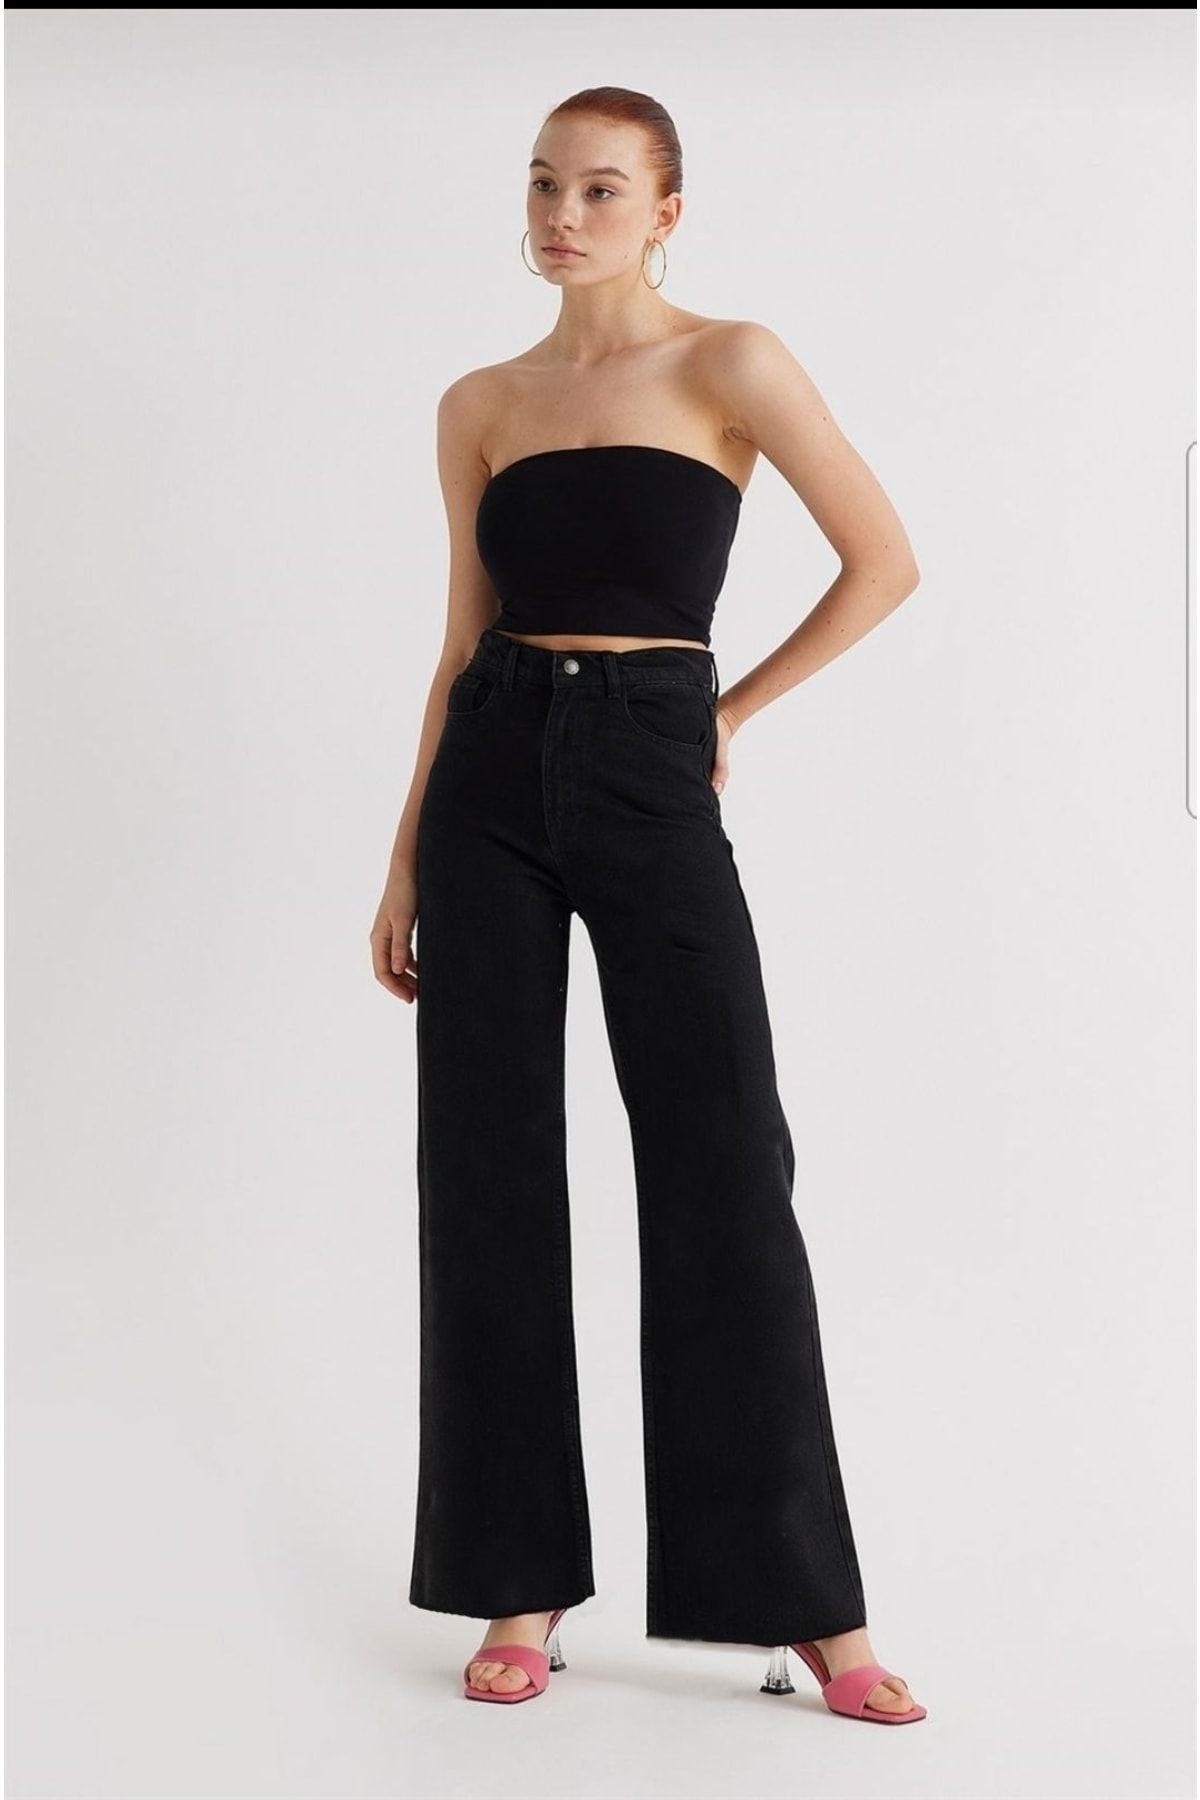 Jeans & Trousers, Zara Women Black Formal Pants